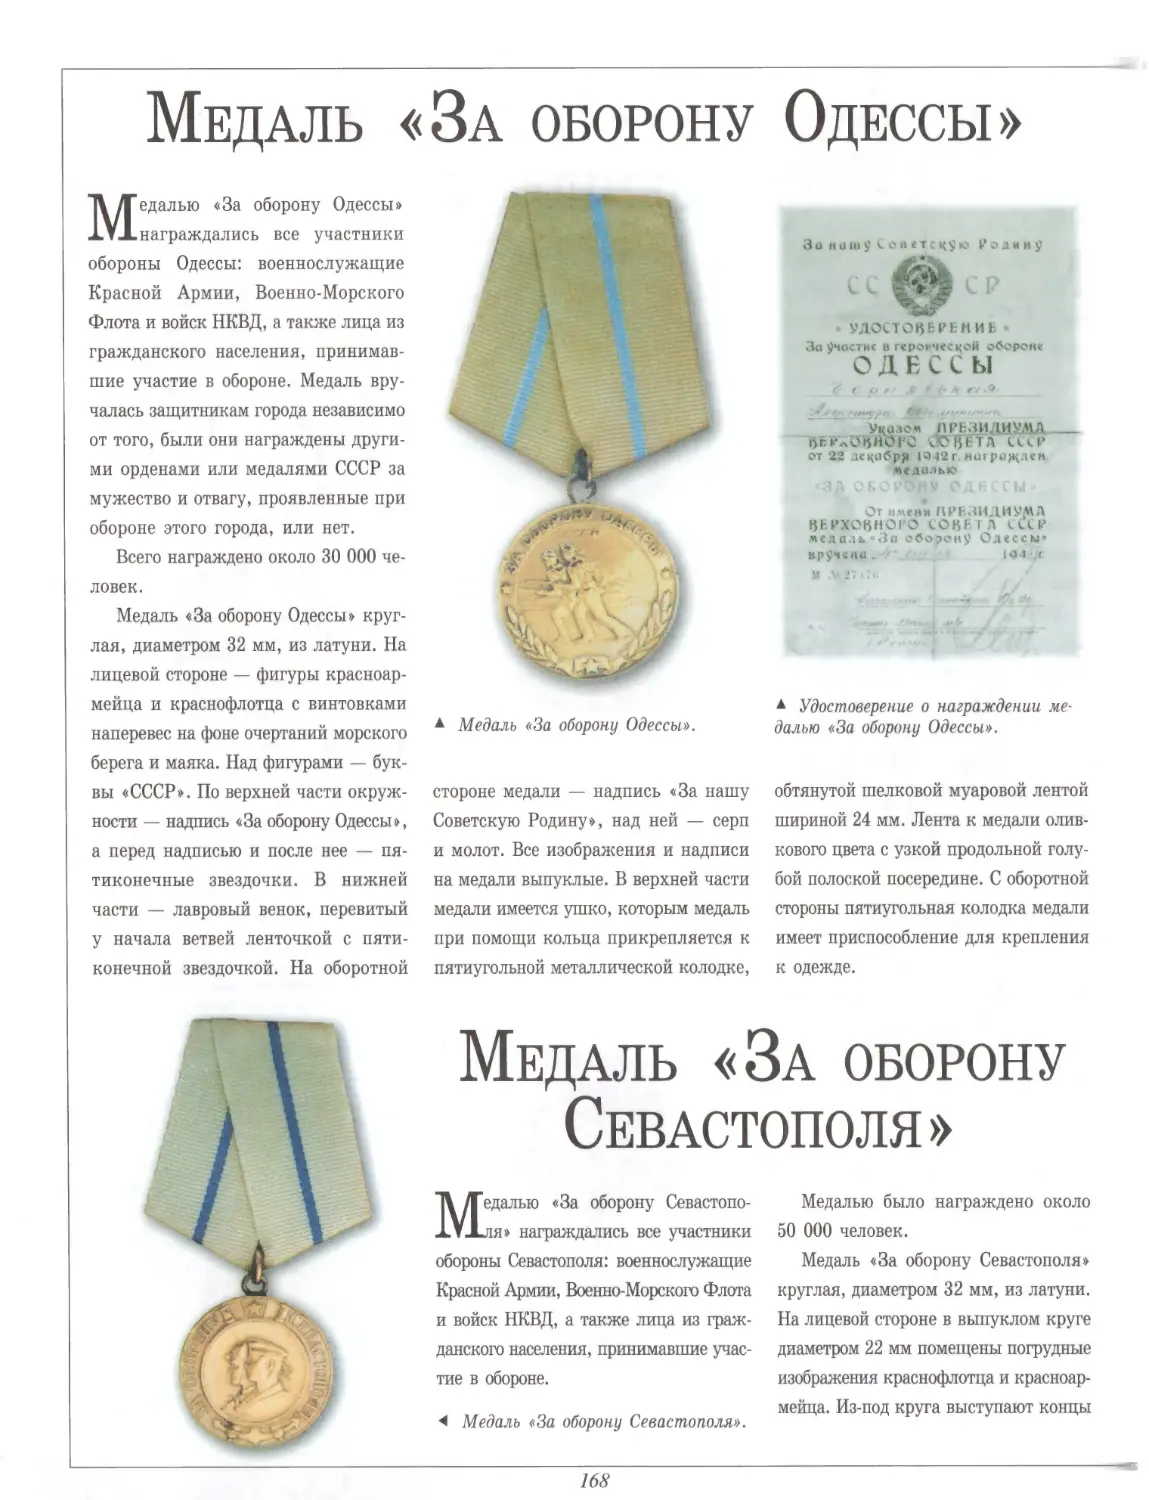 Медаль «За оборону Одессы»
Медаль «За оборону Севастополя»